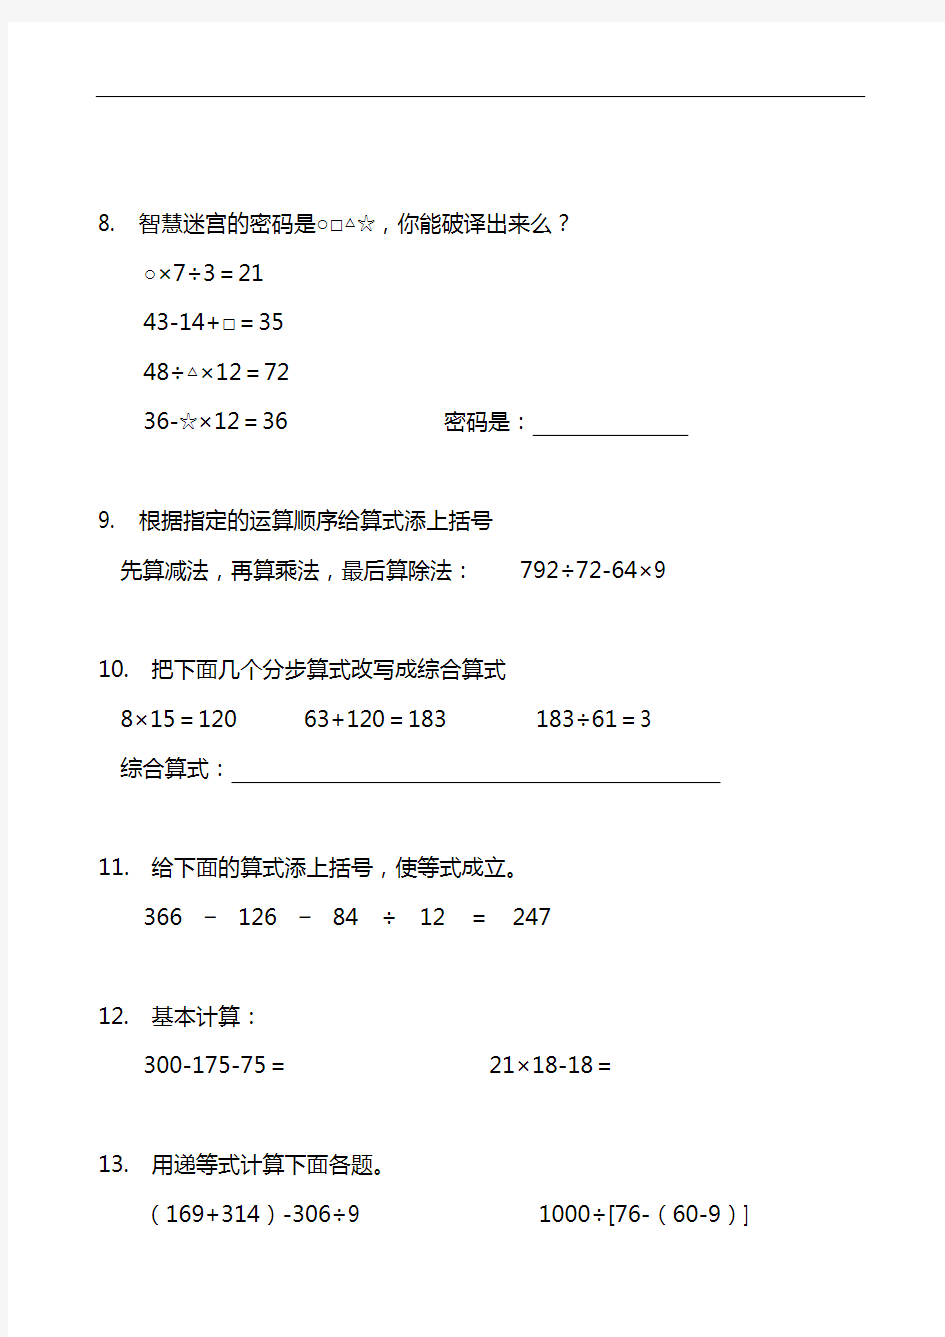 人教版数学四年级下册错题集(49题)